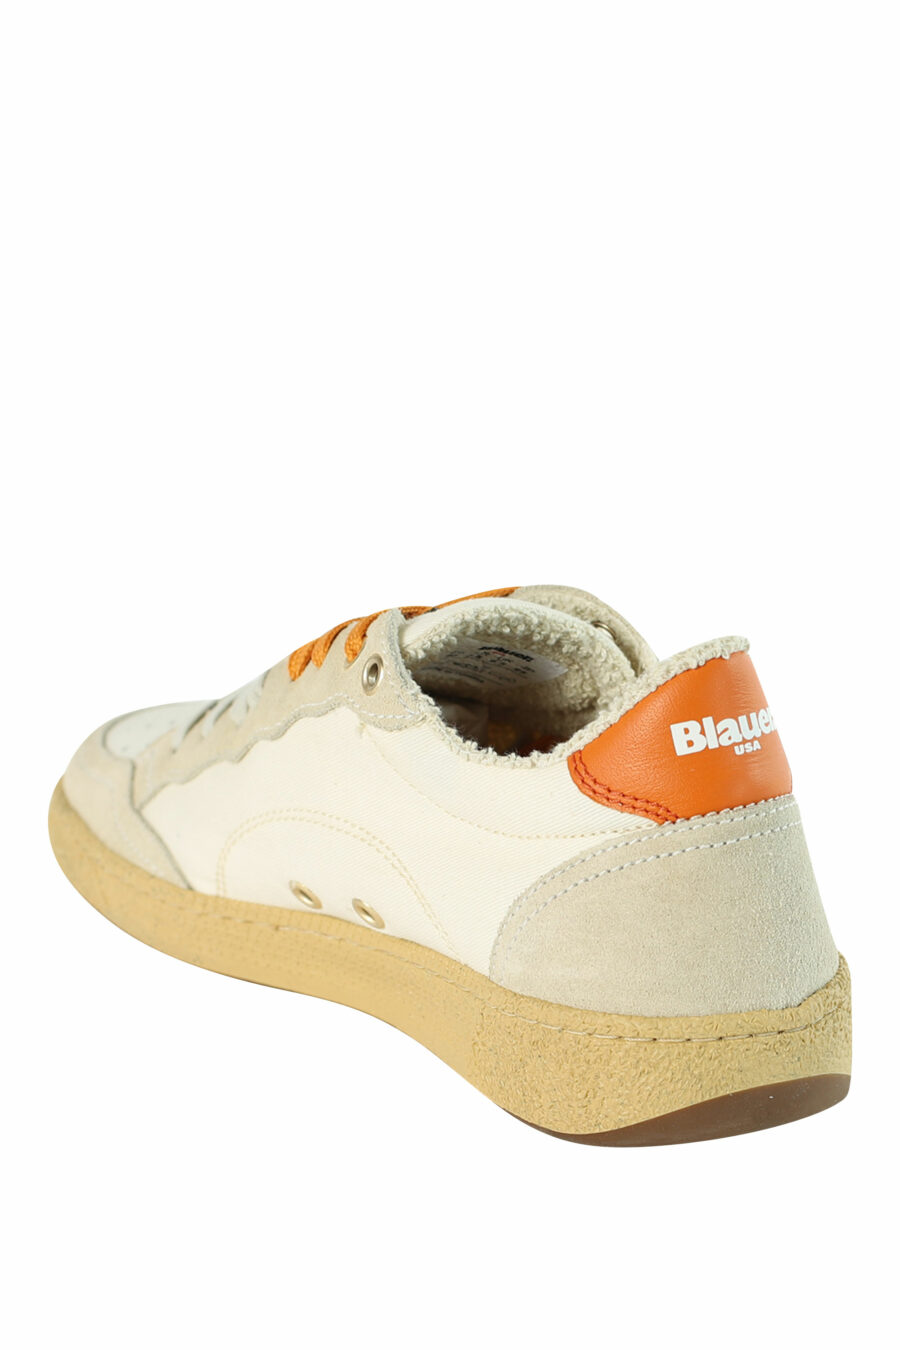 Zapatillas "MURRAY" blancas con detalles naranjas - 8058156497214 4